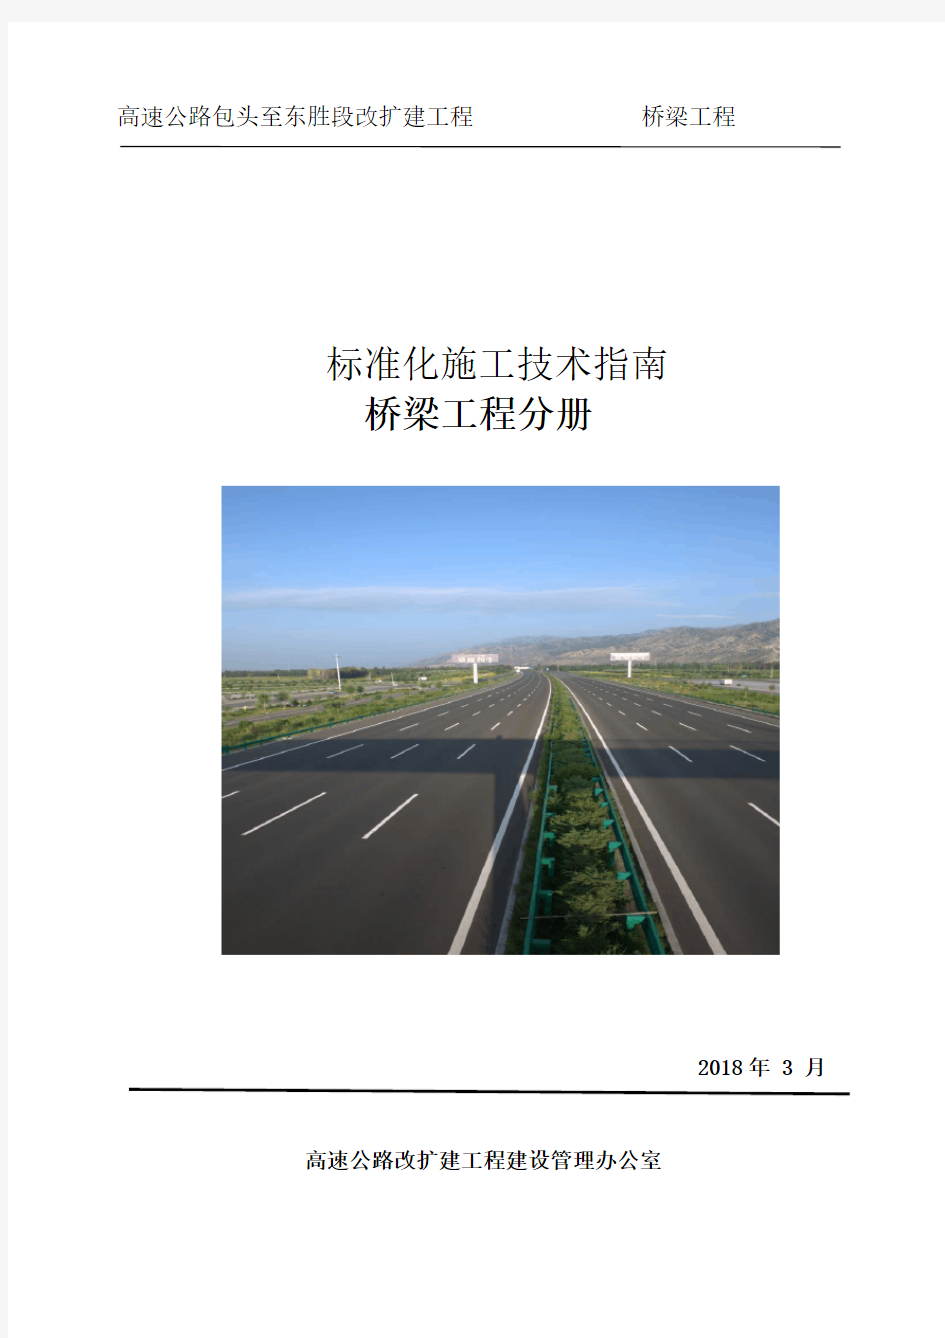 高速公路改扩建工程标准化施工技术指南